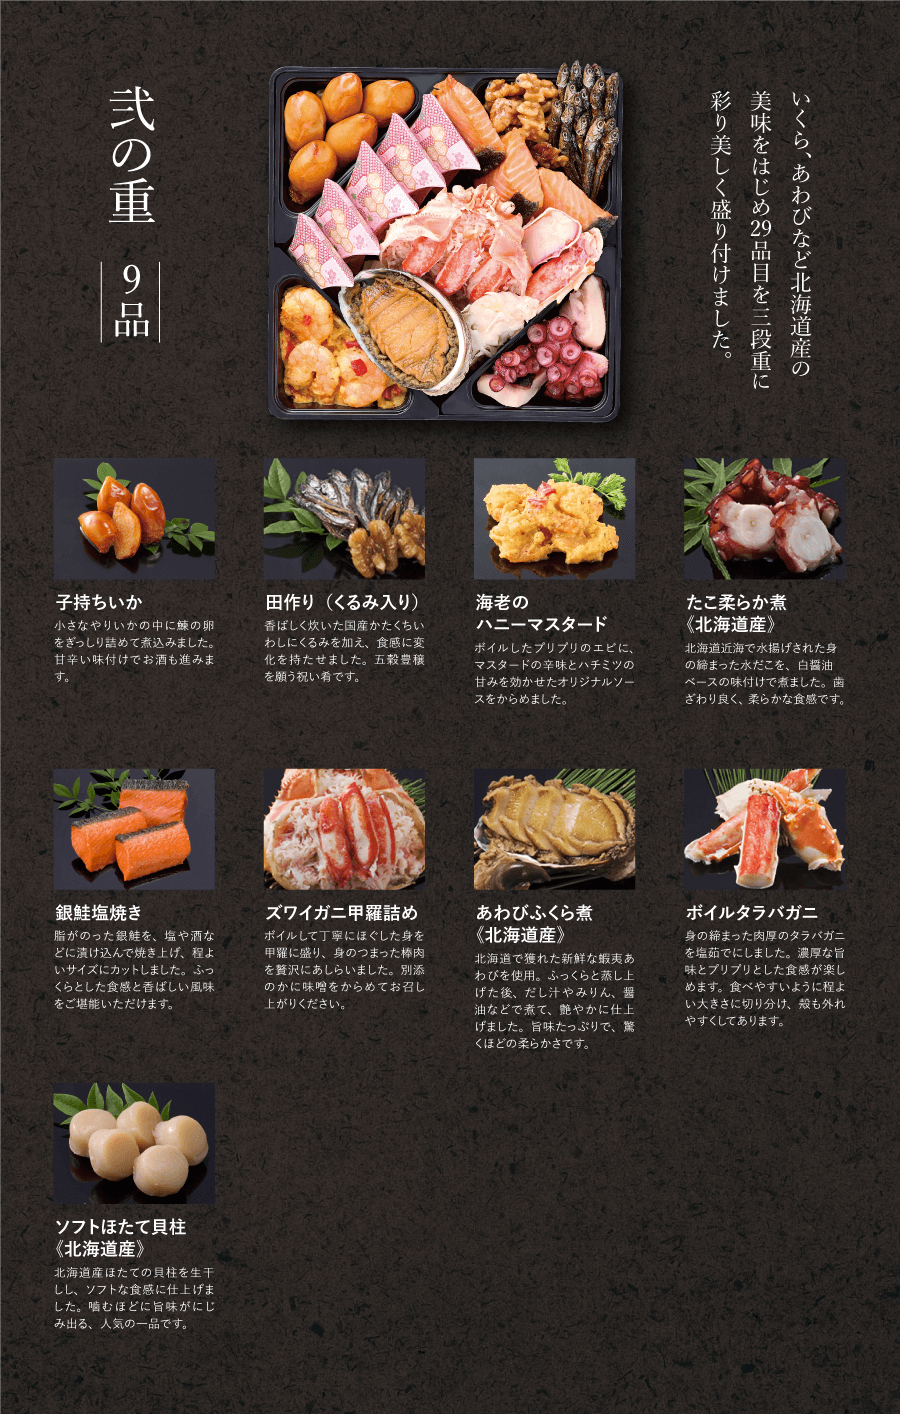 おせち料理 とんでん 宅配 北海道うまれの和食レストラン 北海道から新鮮な状態のまま全国へお届けします